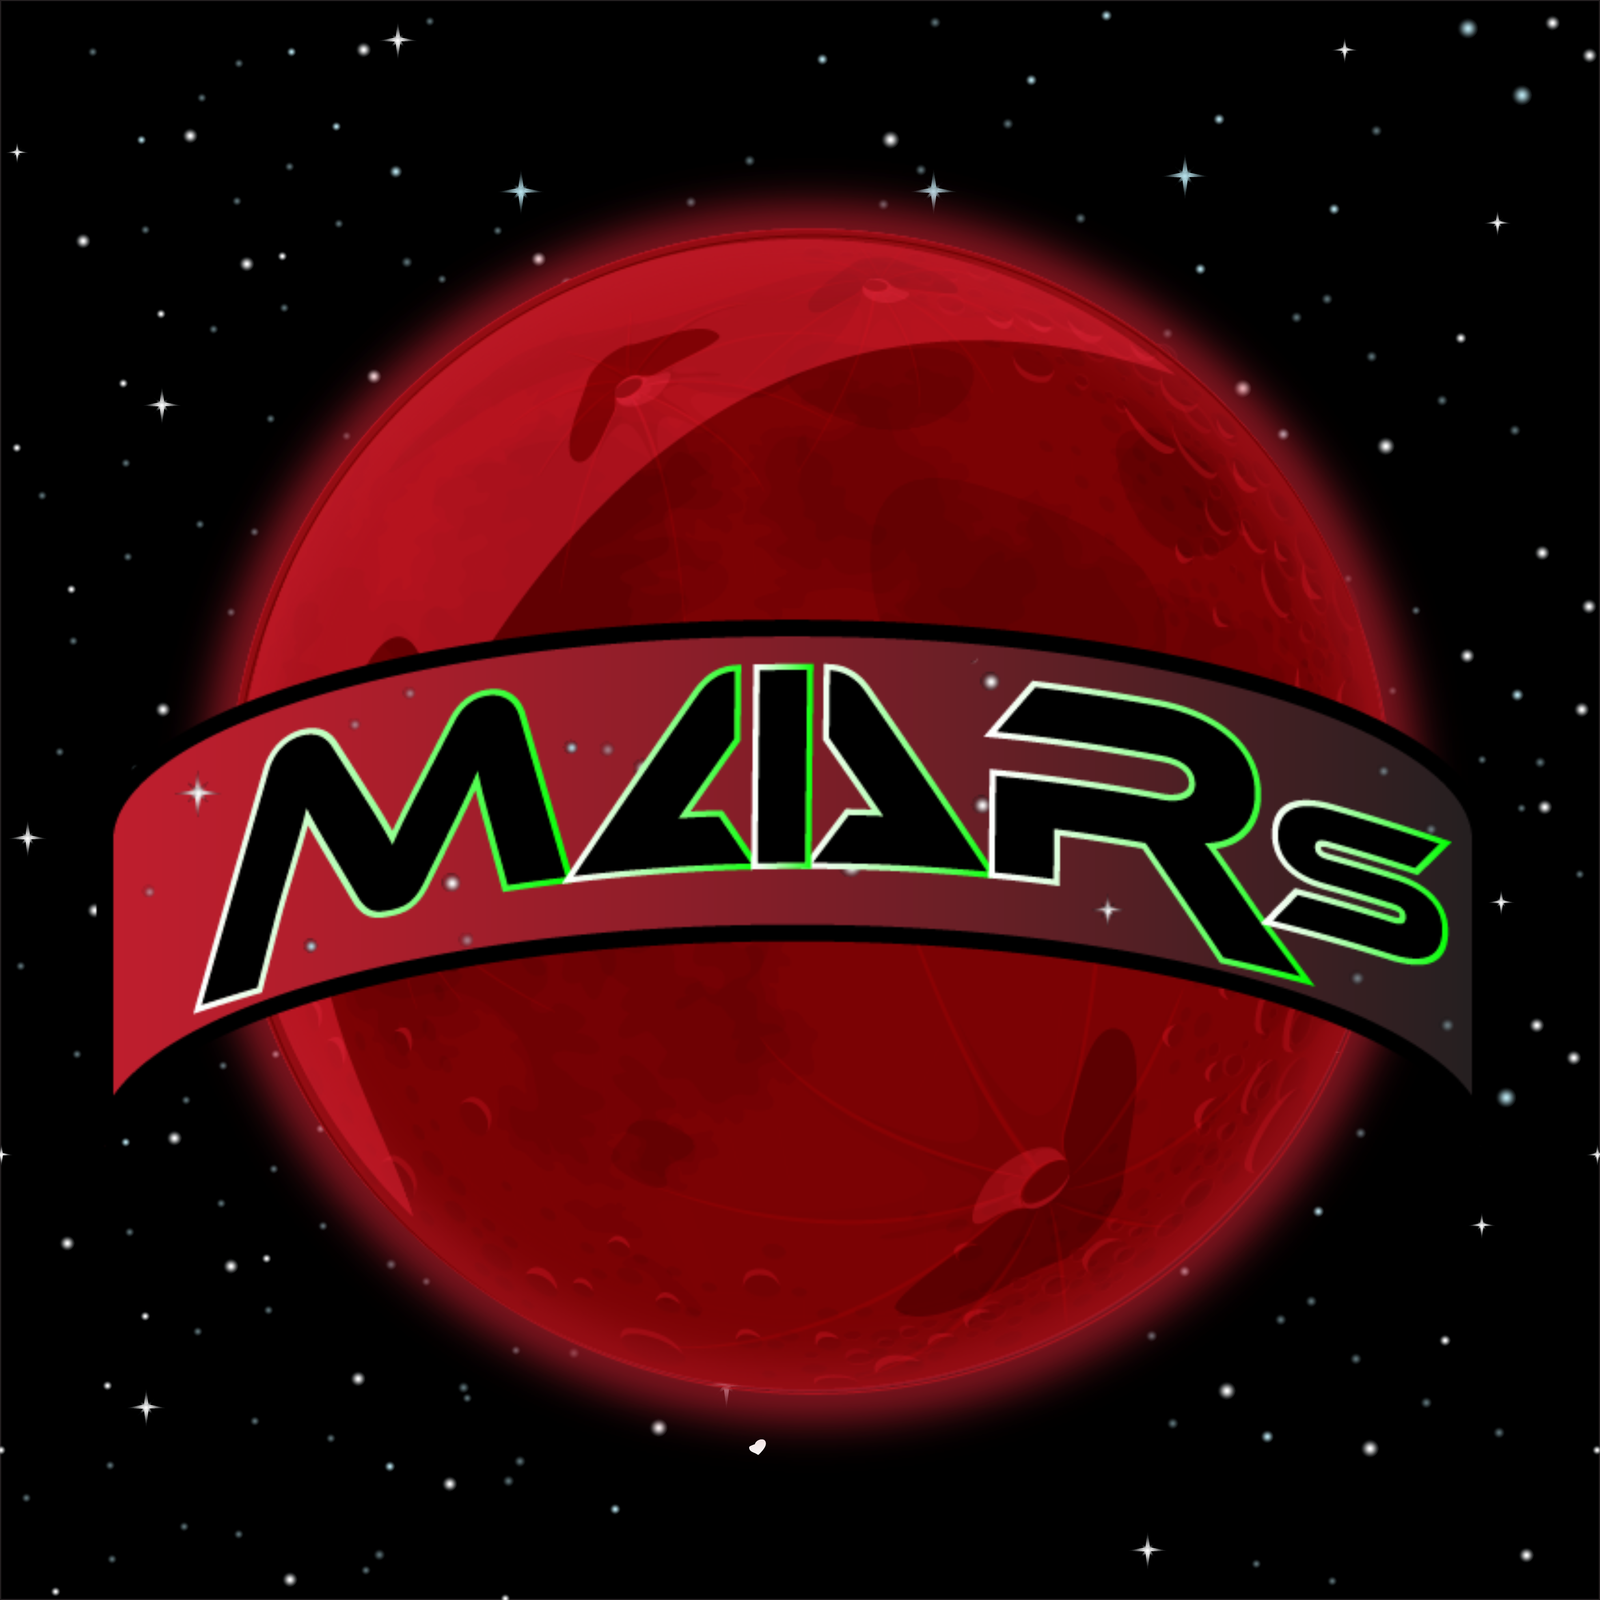 MAARS Media LLC